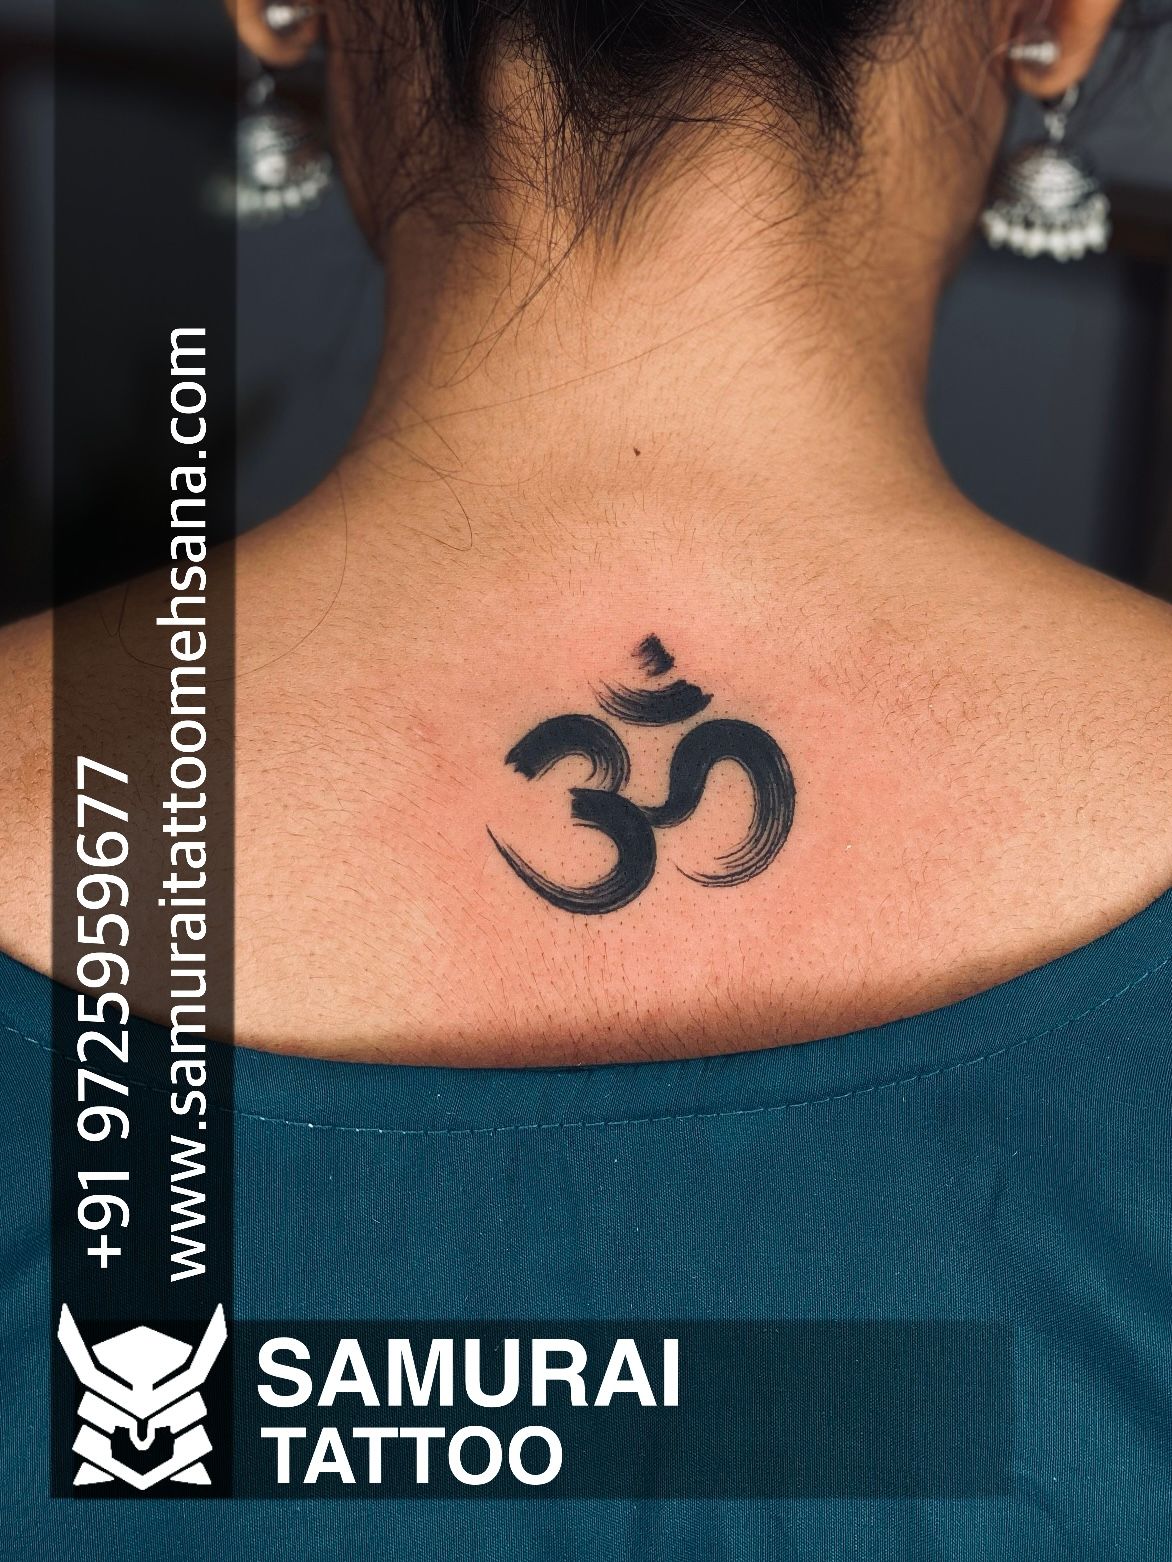 lordshiva #mahadev #lordshivatattoo #mahadev #coveruptattoo #bholenath  #shivatattoo #shankar #lordshiva #tattoo #tattoos #inked #ink #work… |  Instagram